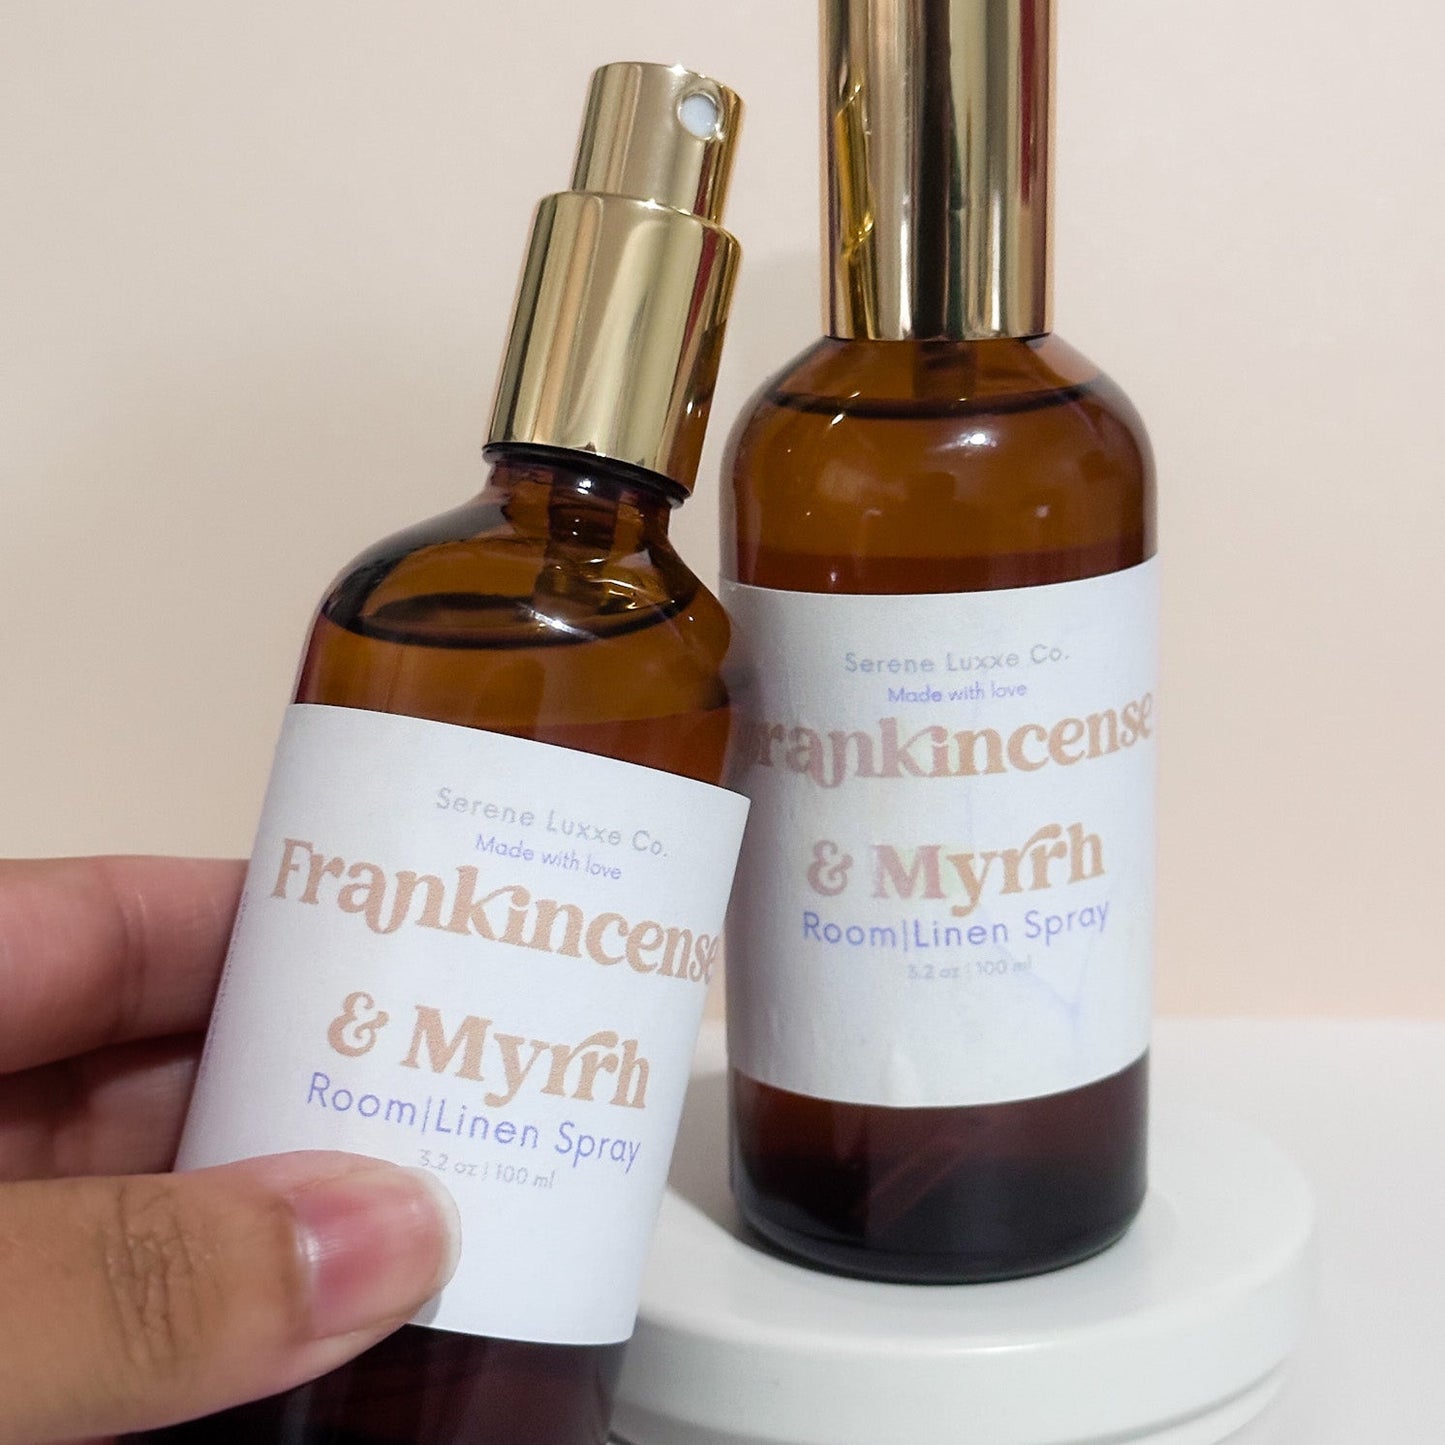 Frankincense & Myrrh Room|Linen Spray